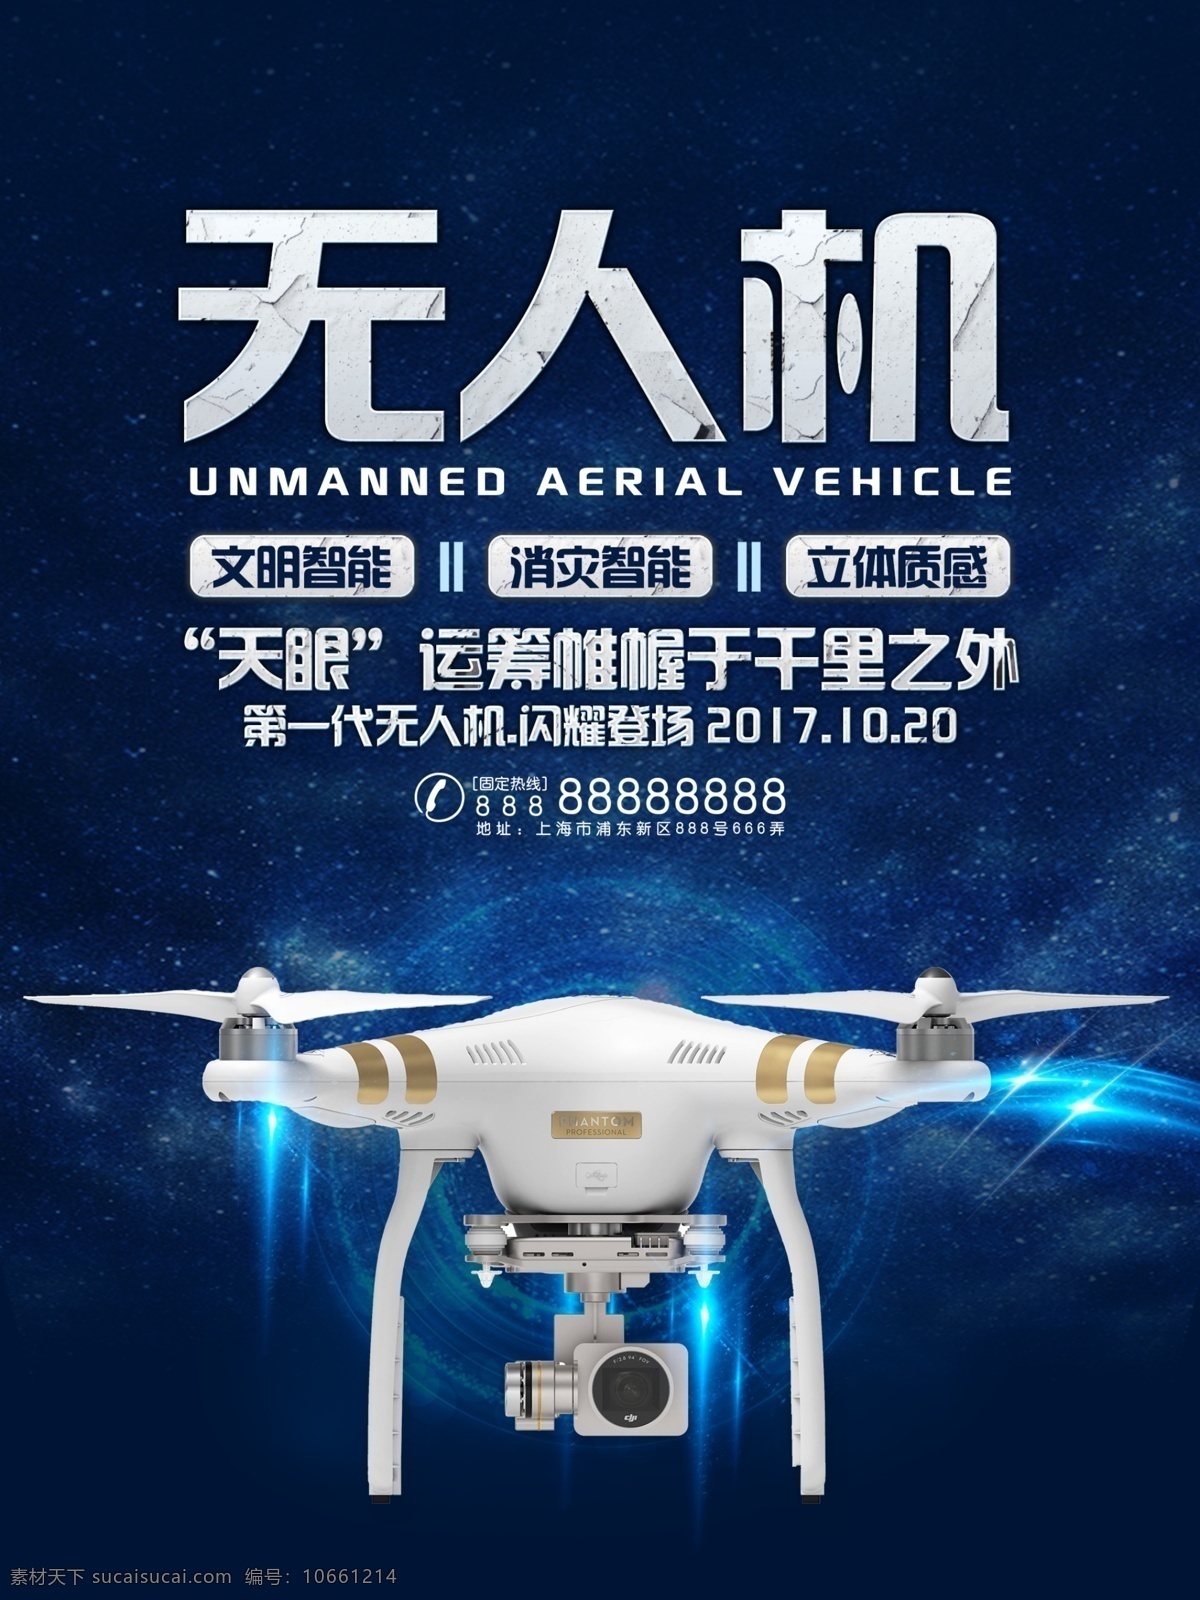 无人机 科技 宣传海报 无人机海报 科技海报 无人机广告 无人机素材 海报 背景